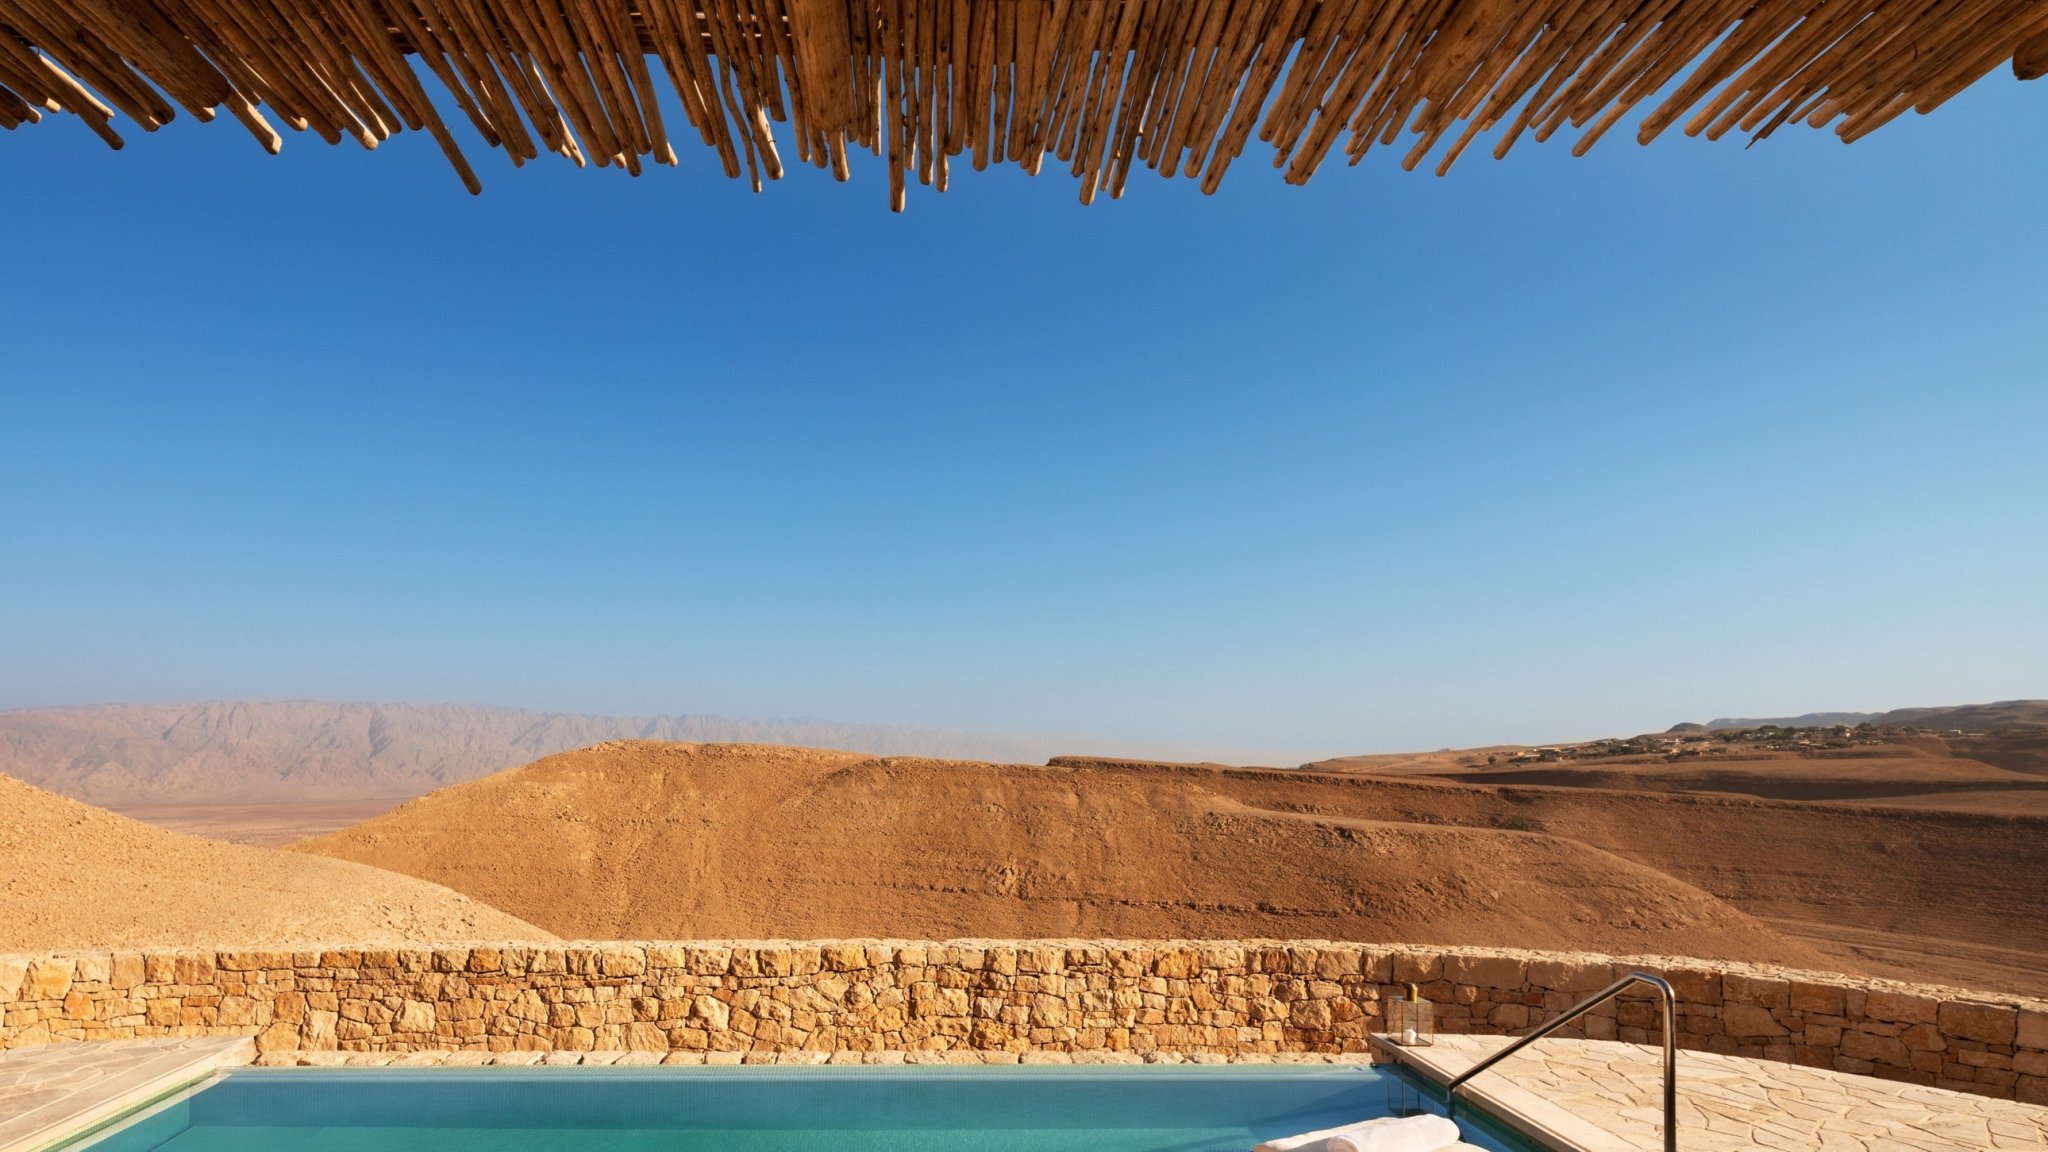 De Palm Springs a Marrakech, las piscinas más bellas de hoteles en el desierto